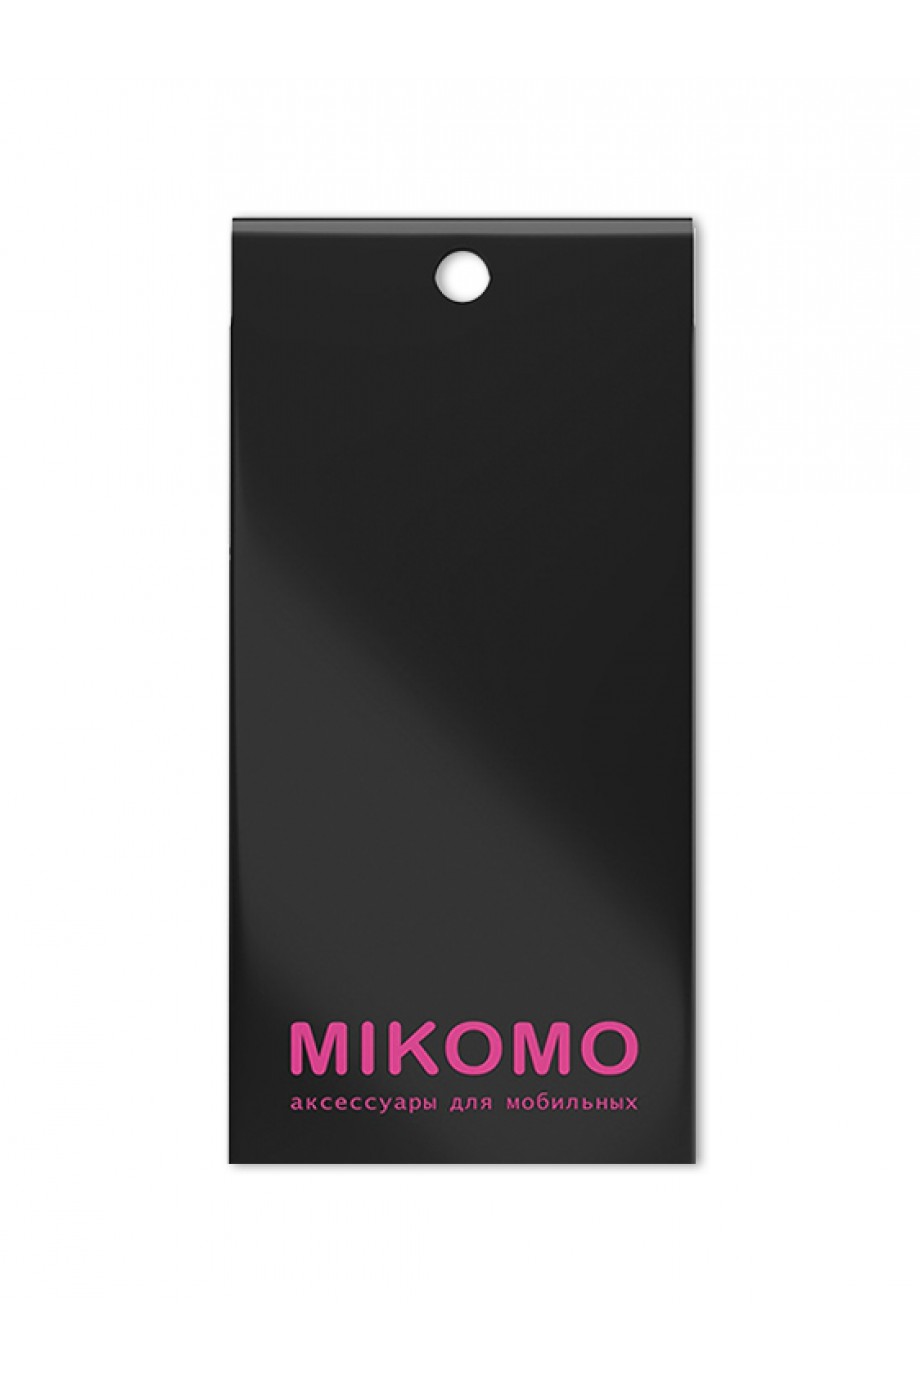 Защитное стекло 5D Mikomo для Huawei P Smart Z, черная рамка, полный клей